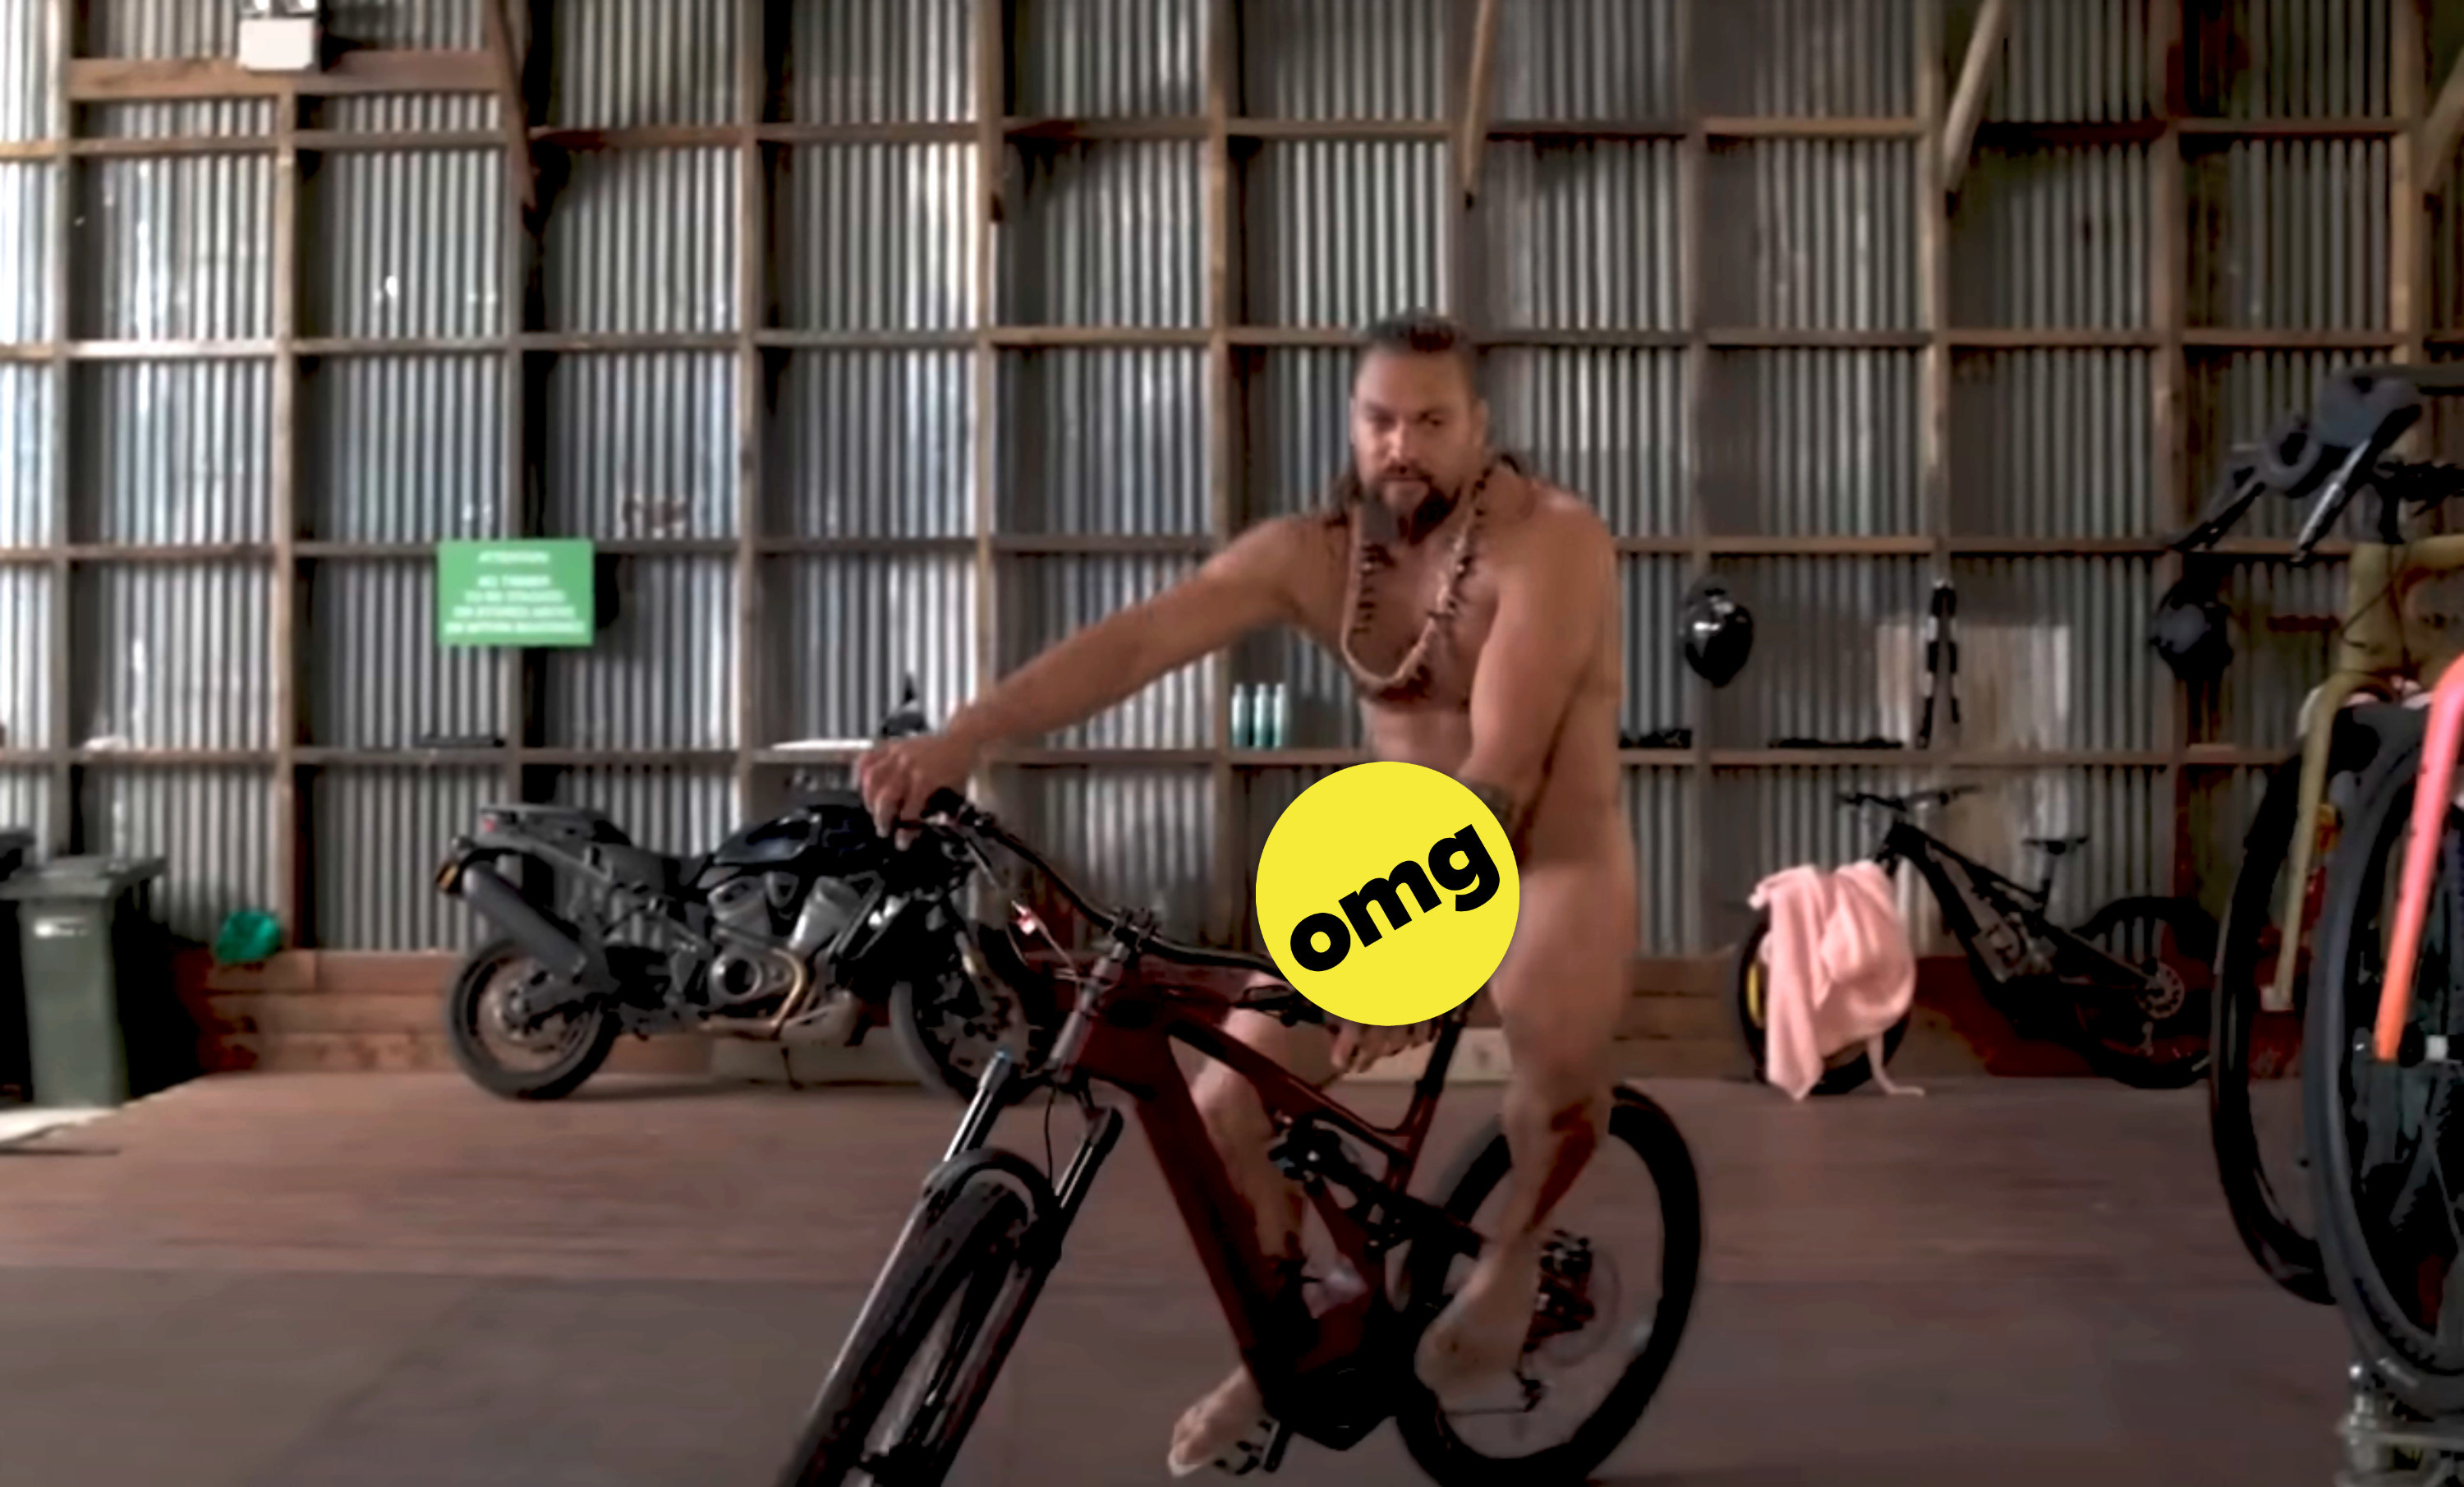 Jason Momoa biking naked